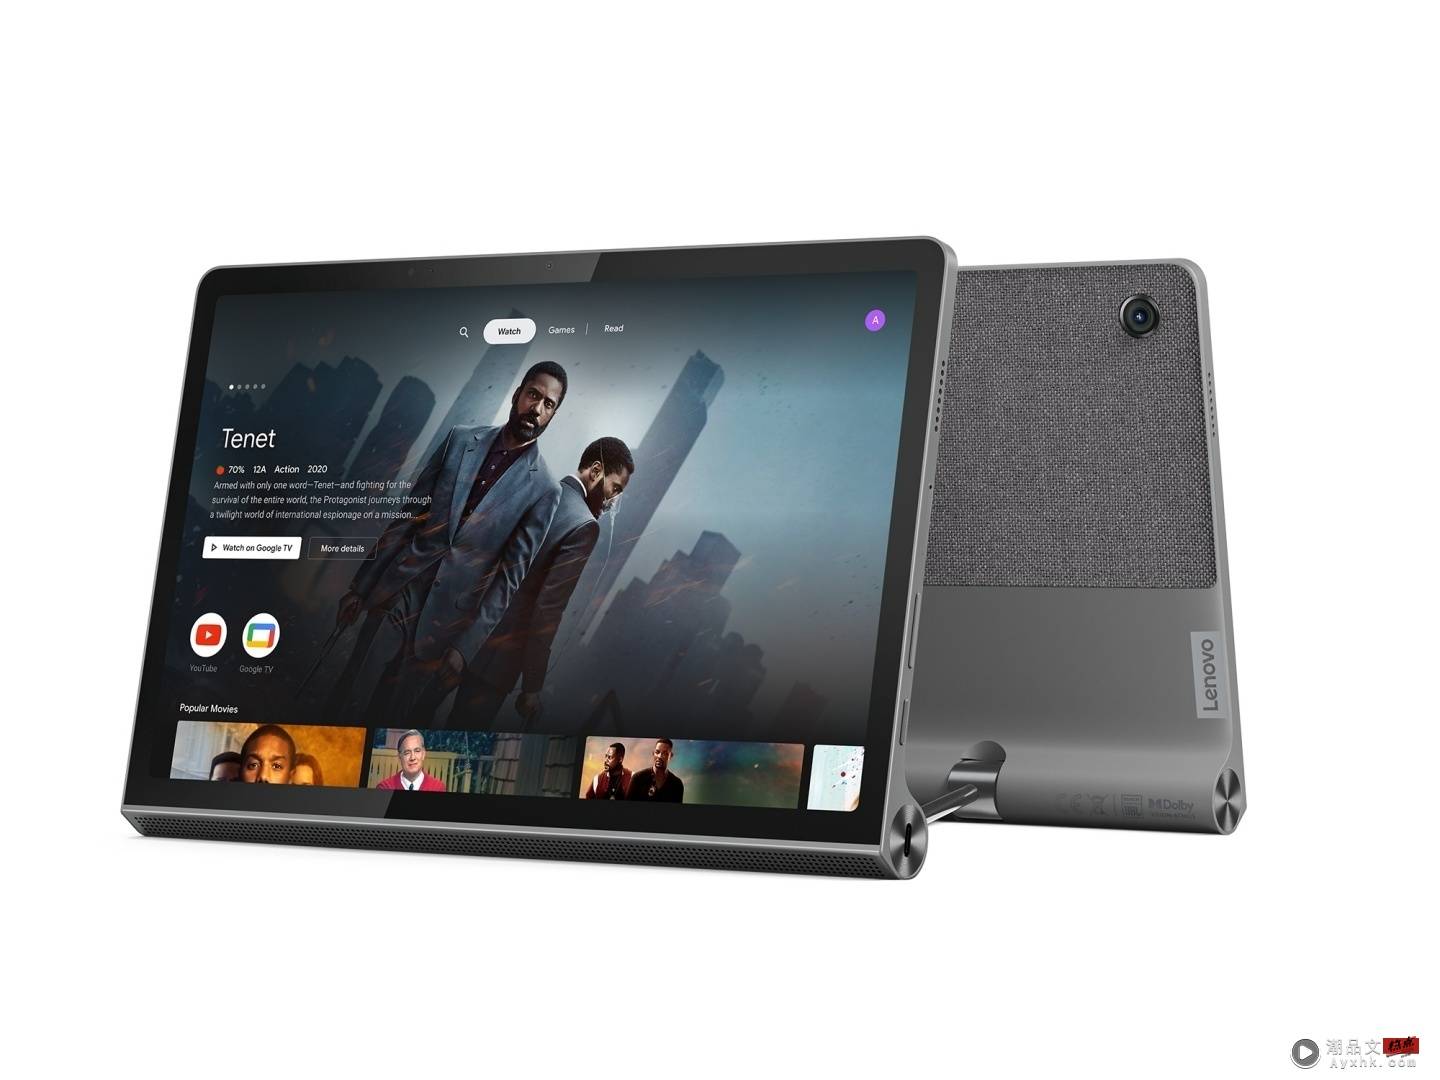 Lenovo 推出 Tab P12 Pro、Yoga Tab 11、Tab P11 5G 三款新平板！瞄准办公、娱乐、5G 连网等多元需求 数码科技 图3张